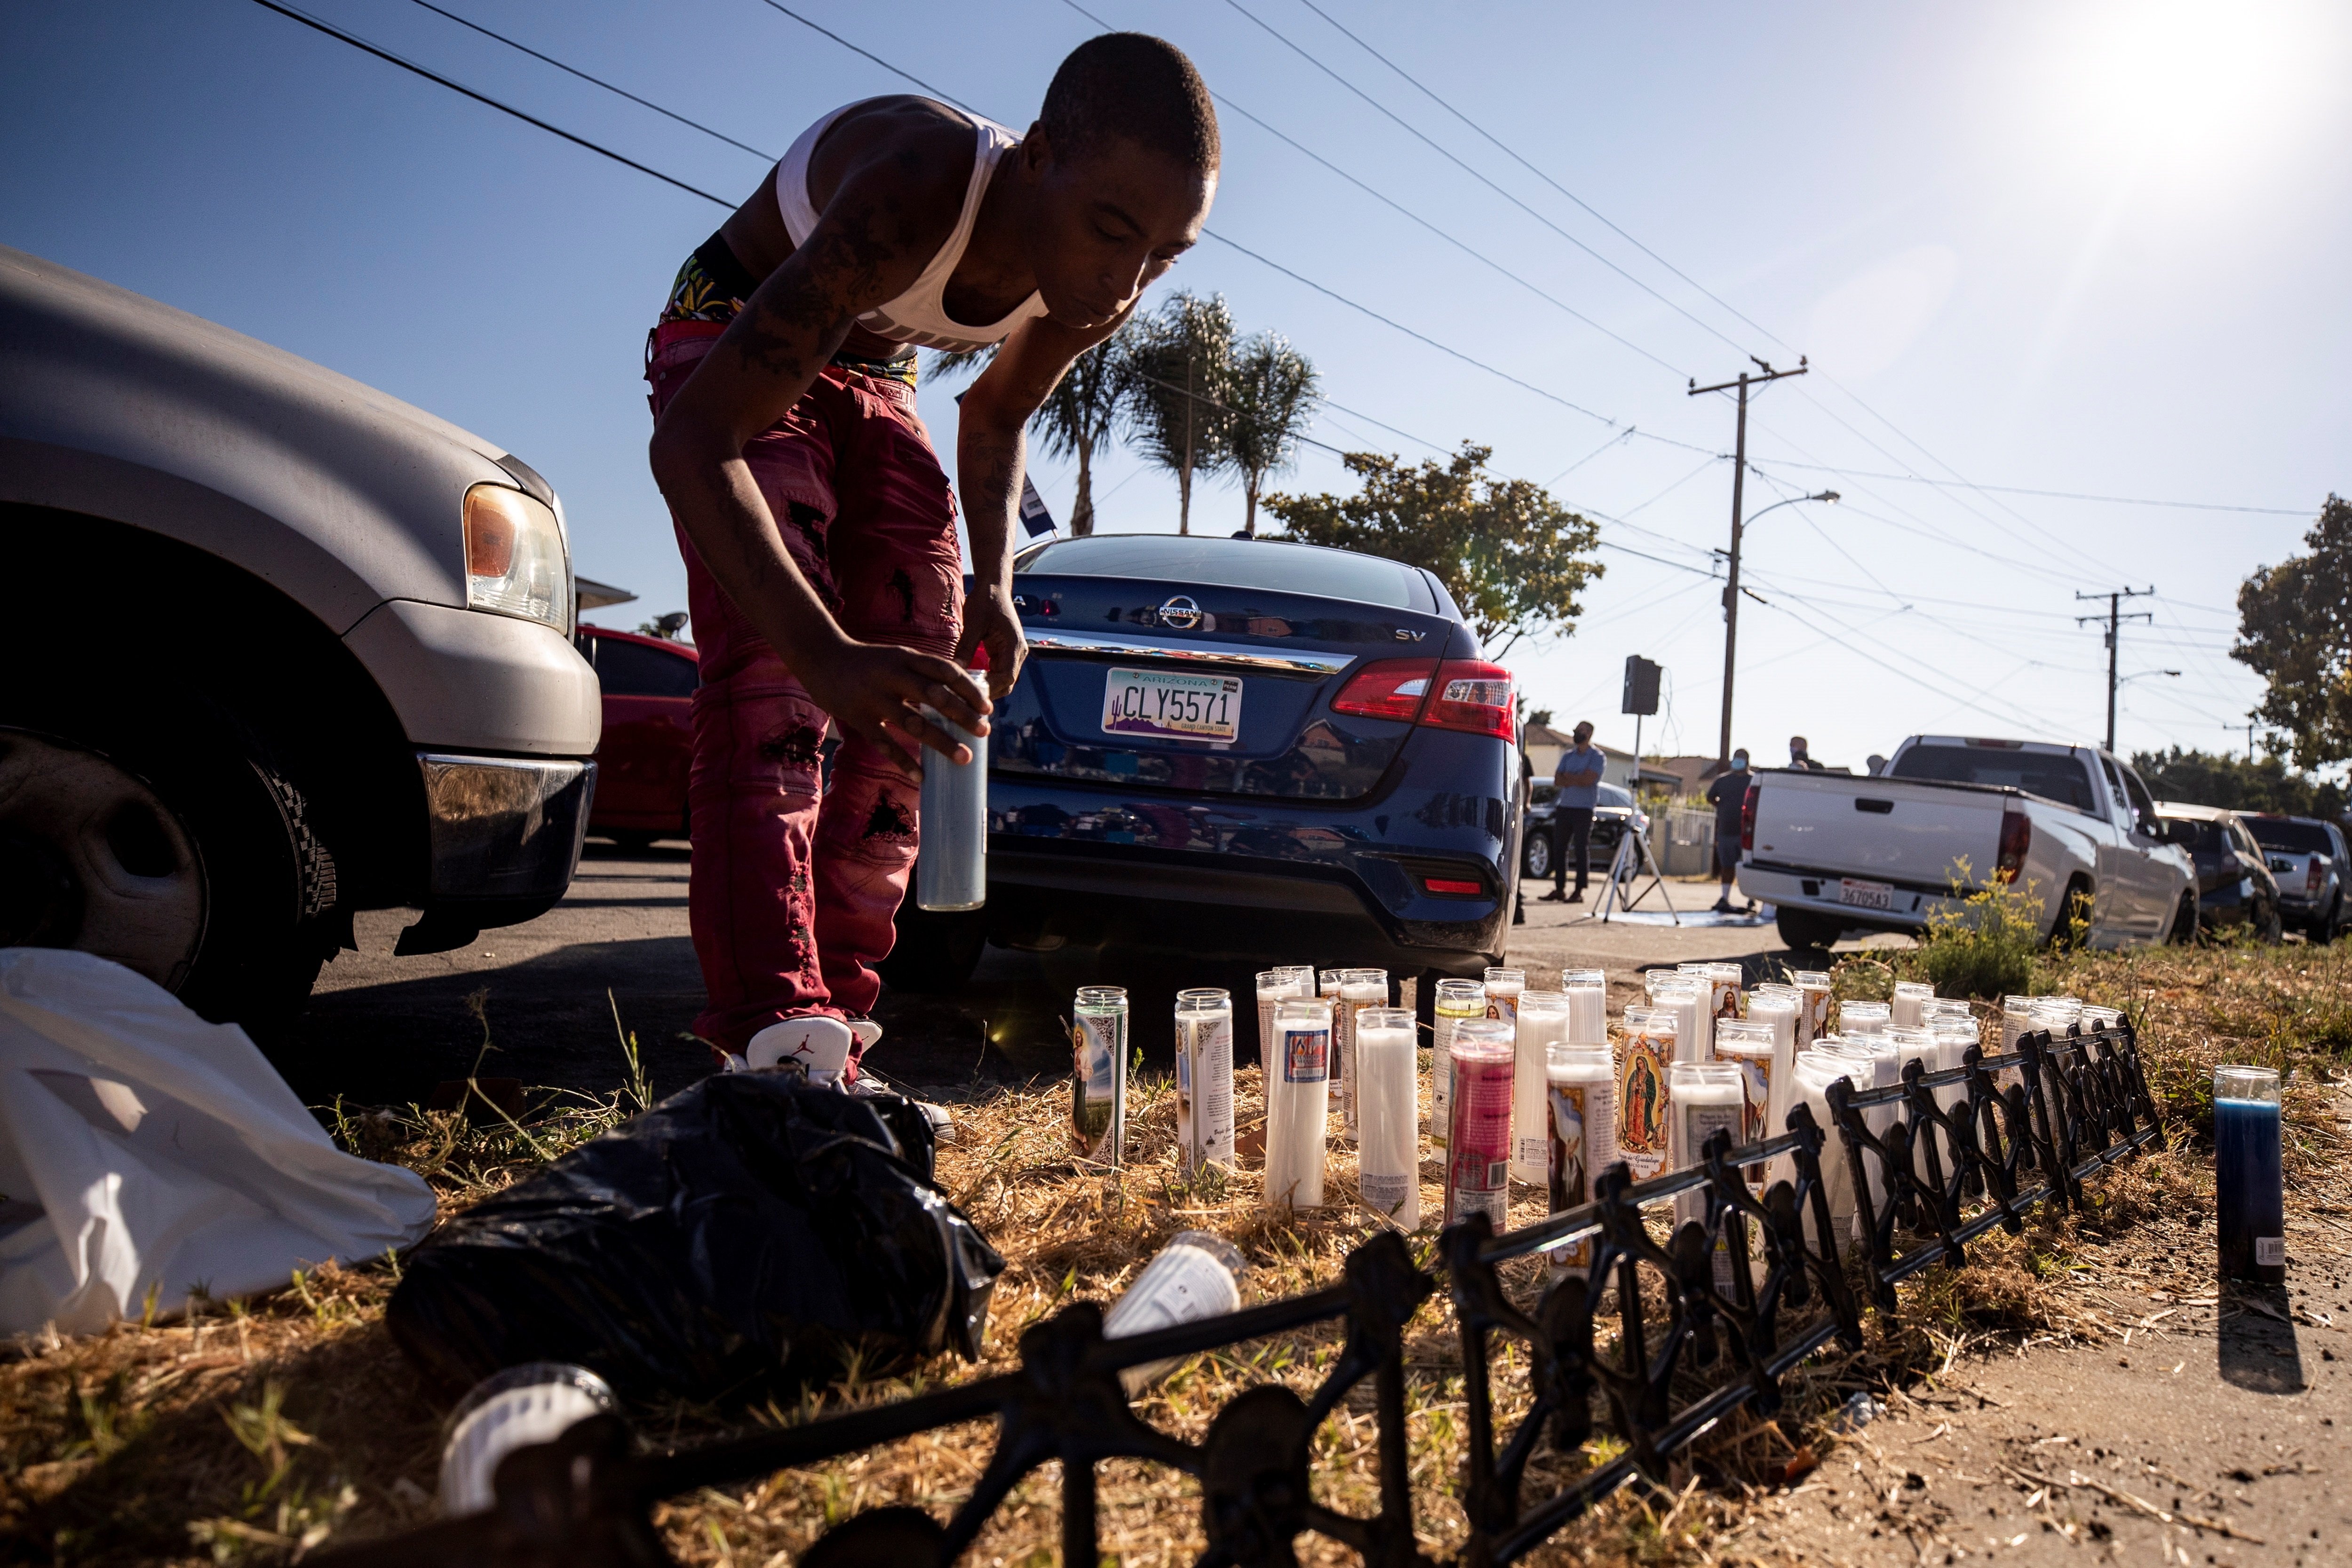 La policia dels EUA mata un afroamericà per una infracció de trànsit amb bici